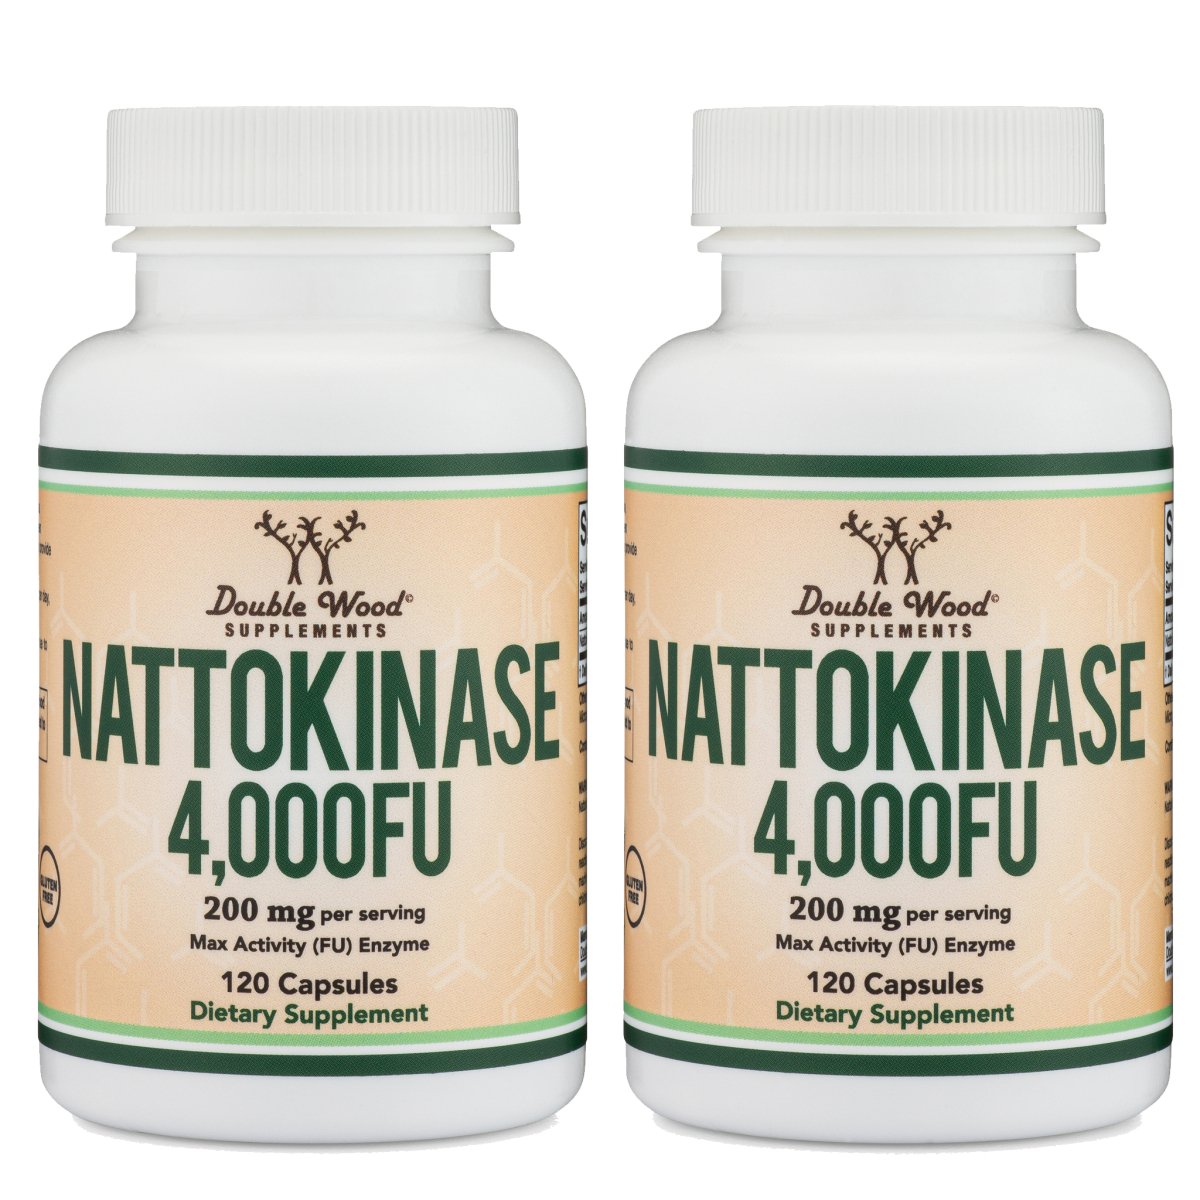 Nattokinase - Double Wood Supplements